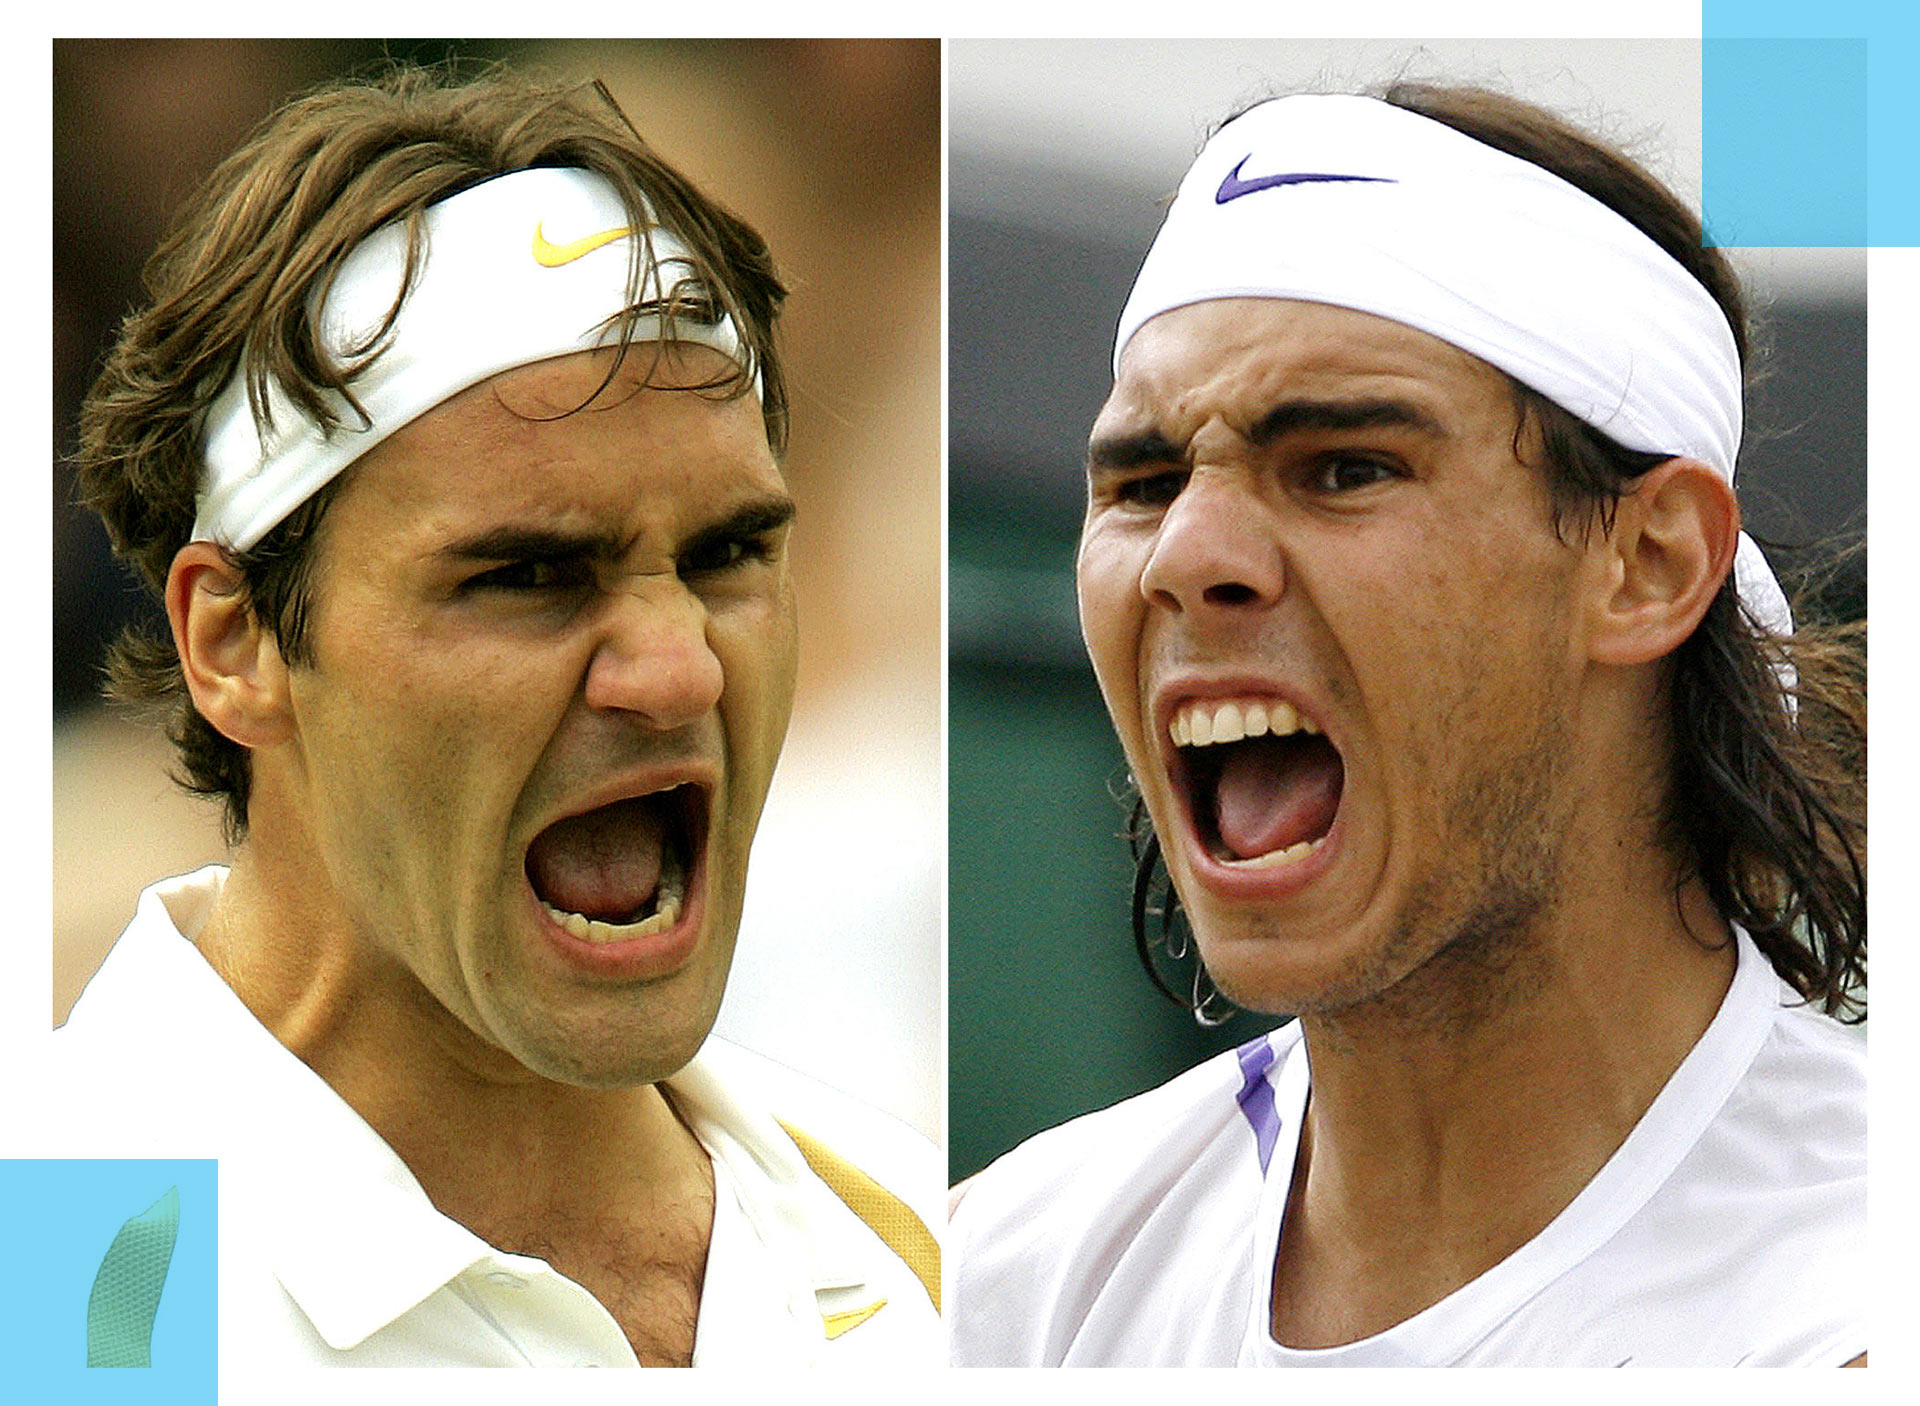 Siêu kinh điển Federer - Nadal: 10 năm trận đấu thiên niên kỷ (Chung kết Wimbledon 2008) - 5